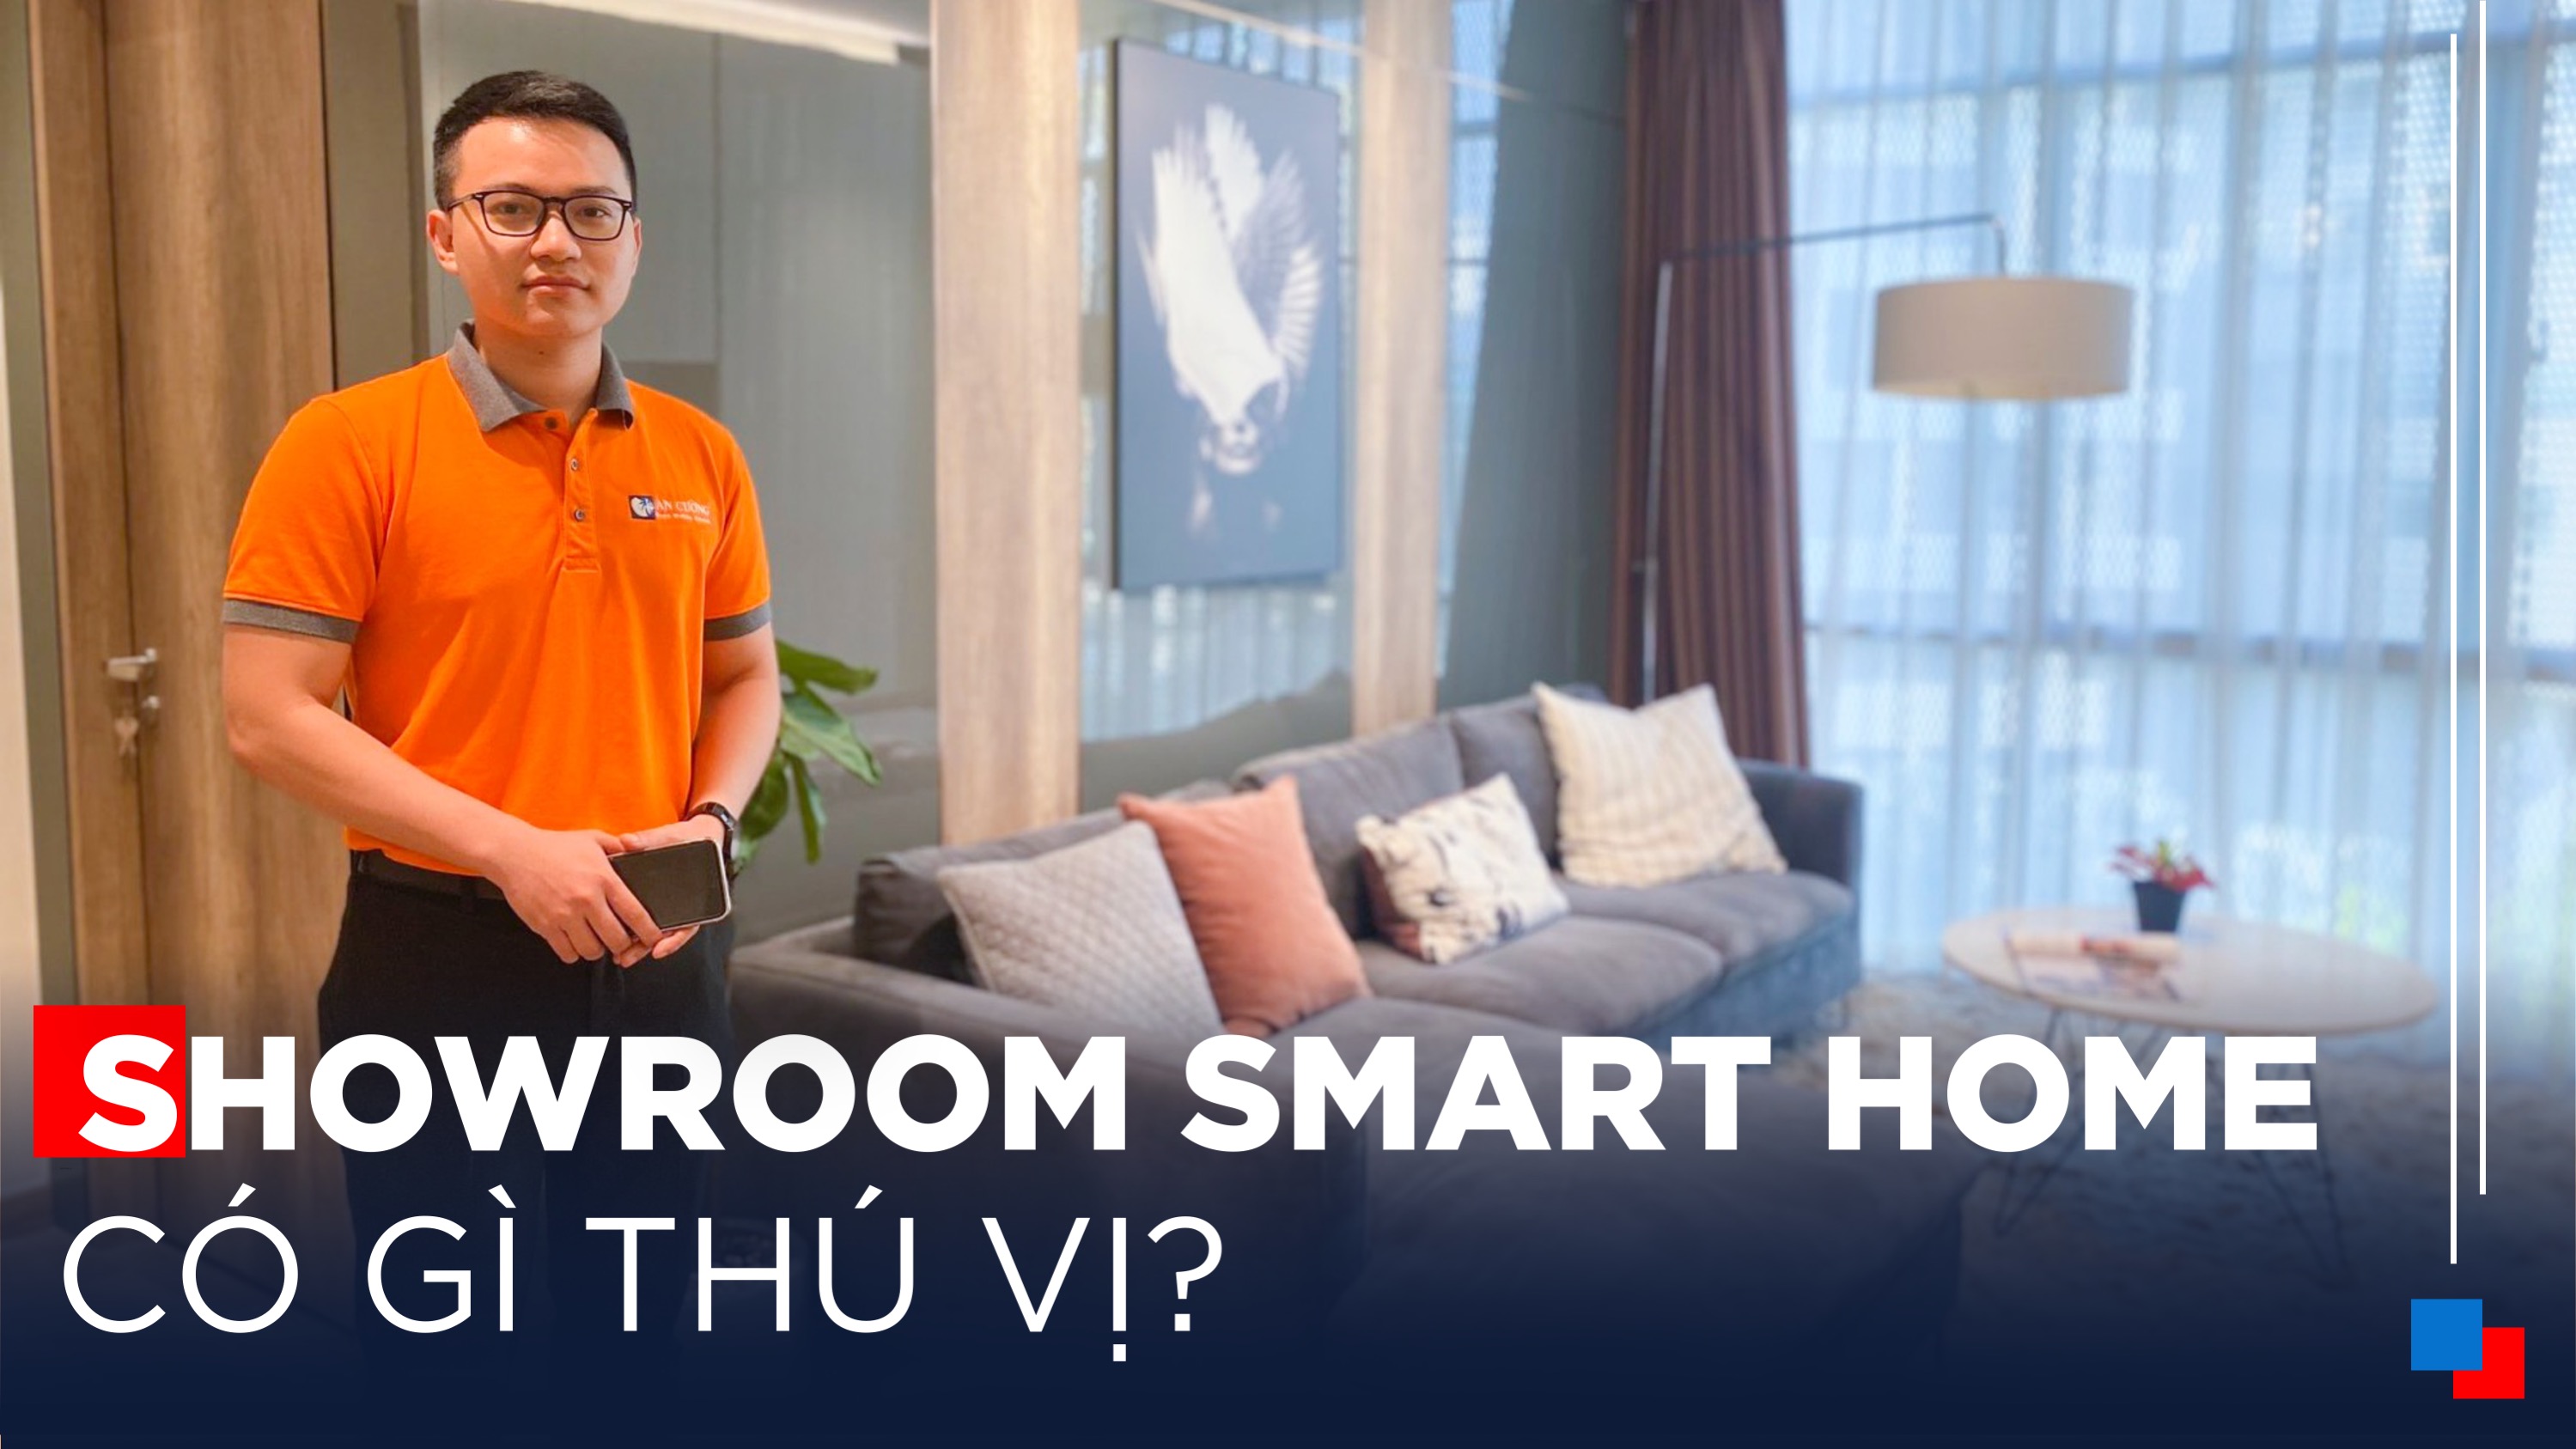 Showroom Smart Home Của An Cường Có Gì Thú Vị?